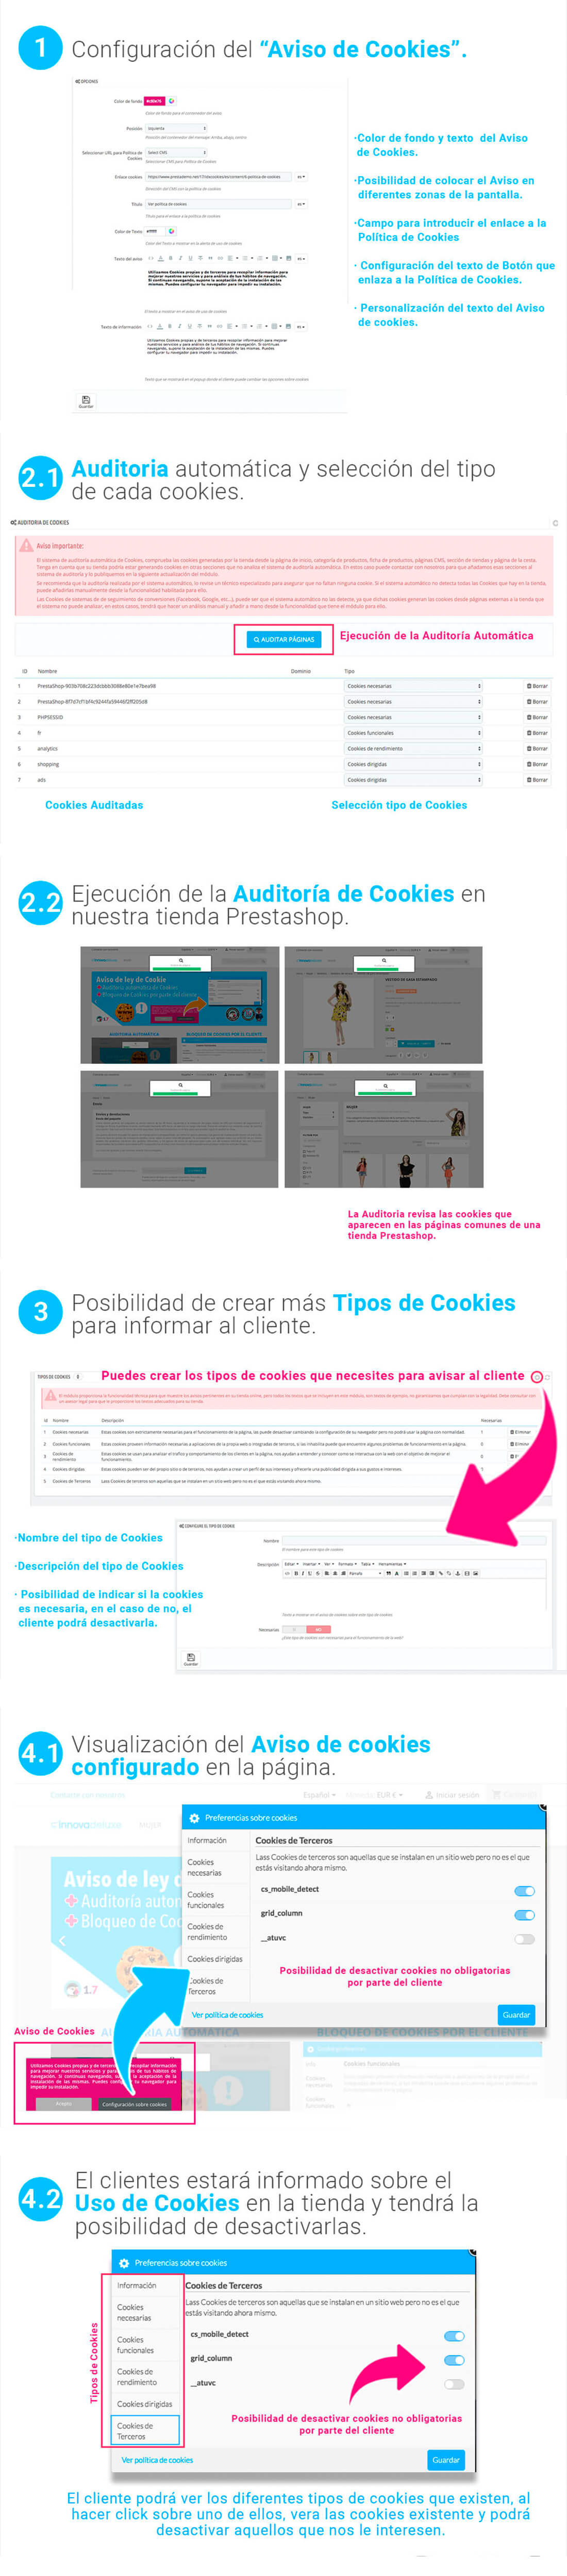 info-cookies-es.jpg